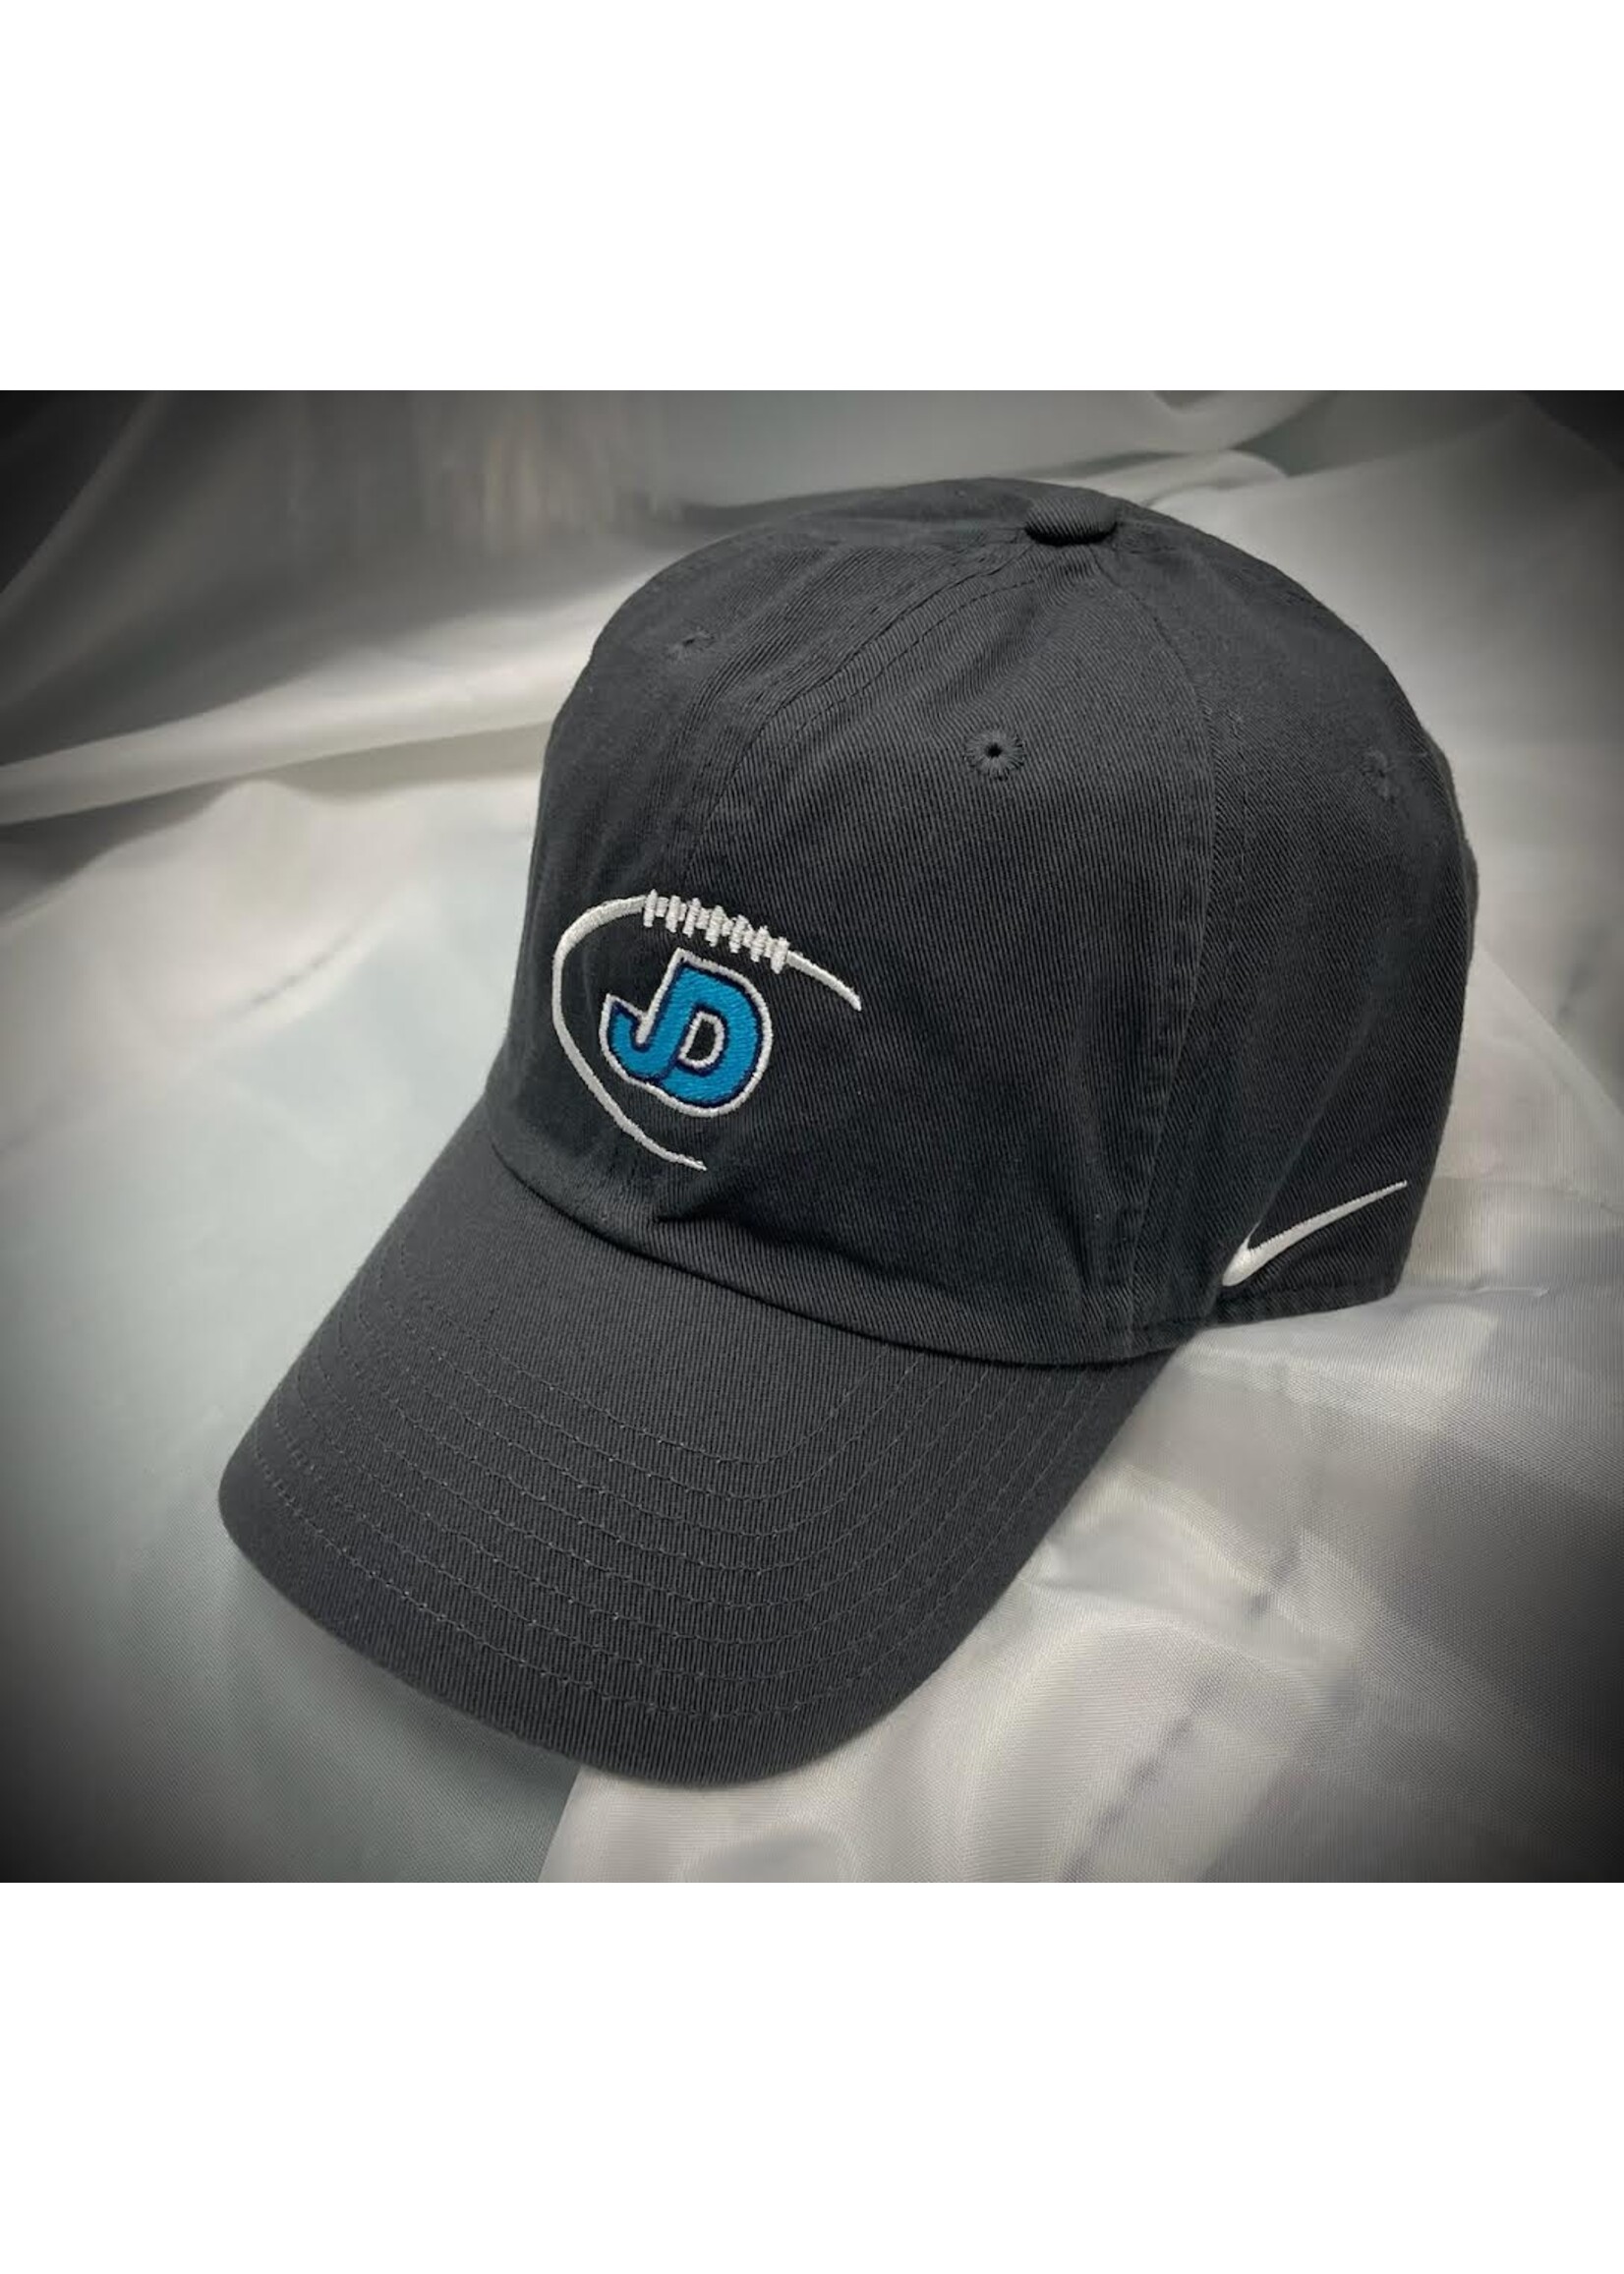 NON-UNIFORM Hat - Custom Nike Football Campus Cap - Men’s/Unisex